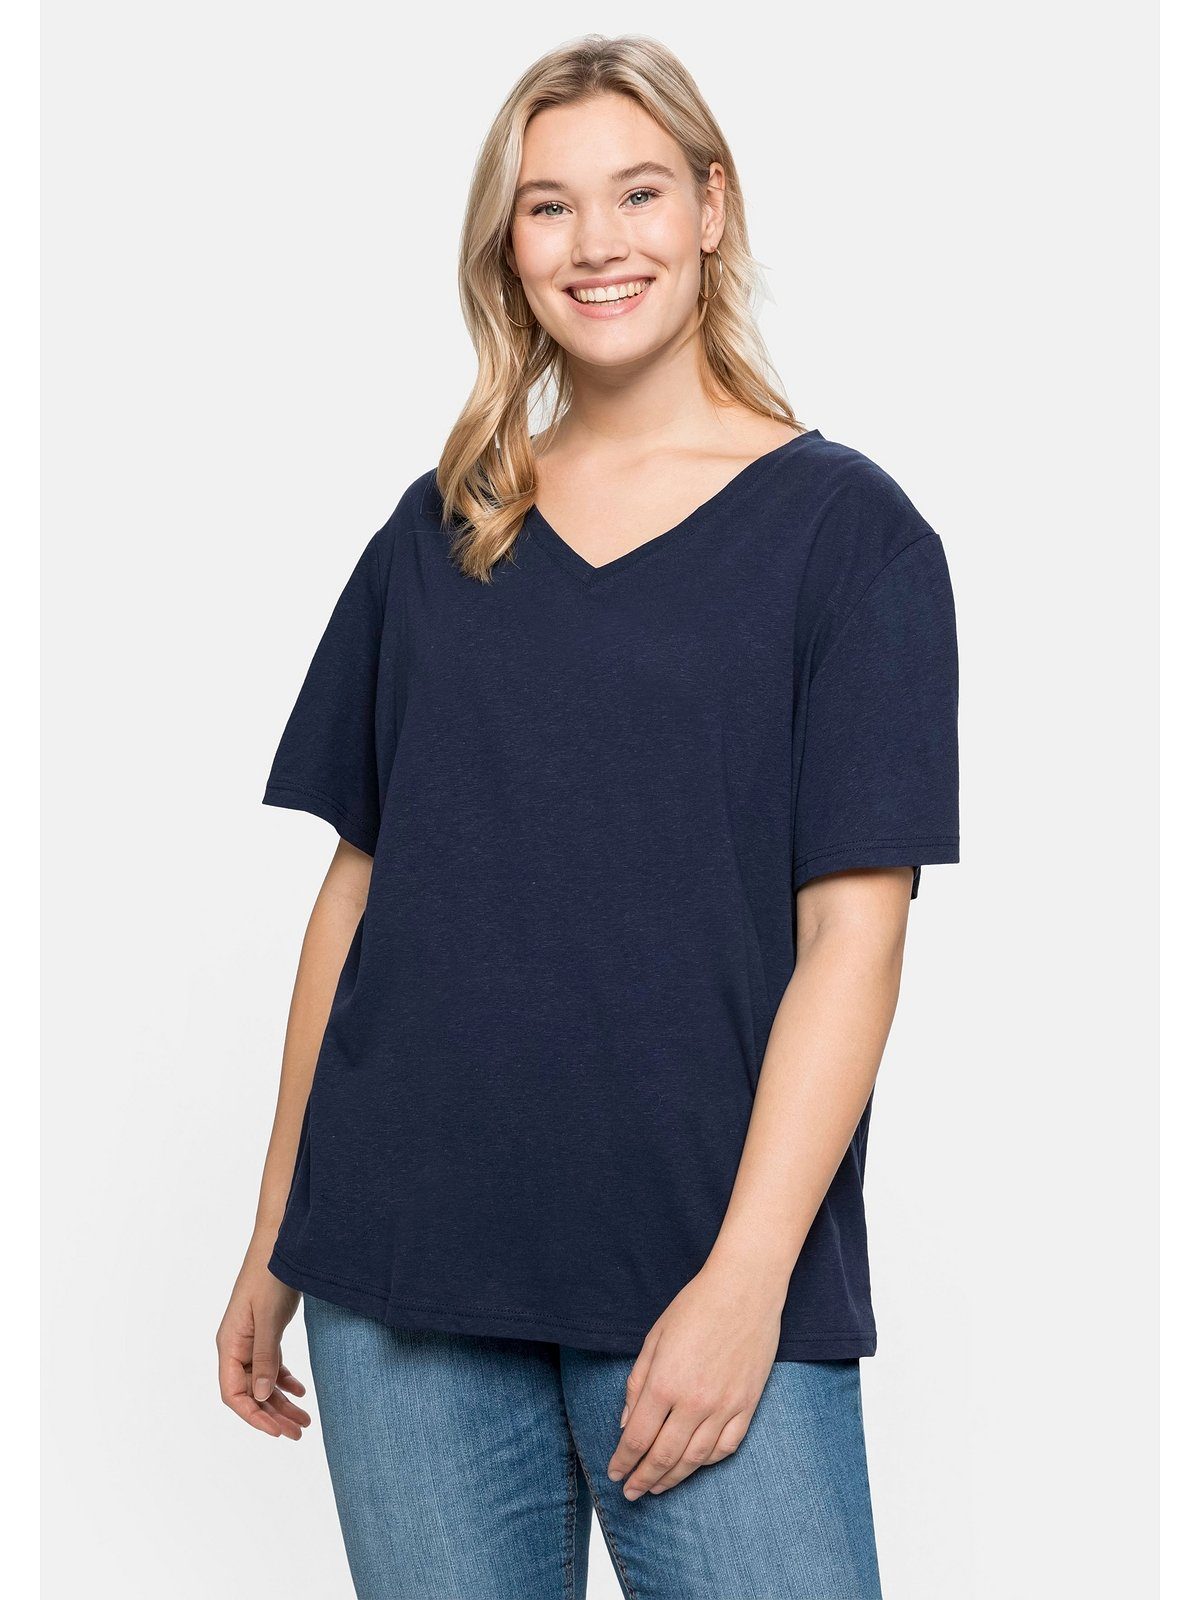 Neueste Artikel von Sheego T-Shirt Große Größen aus marine Leinen-Viskose-Mix edlem